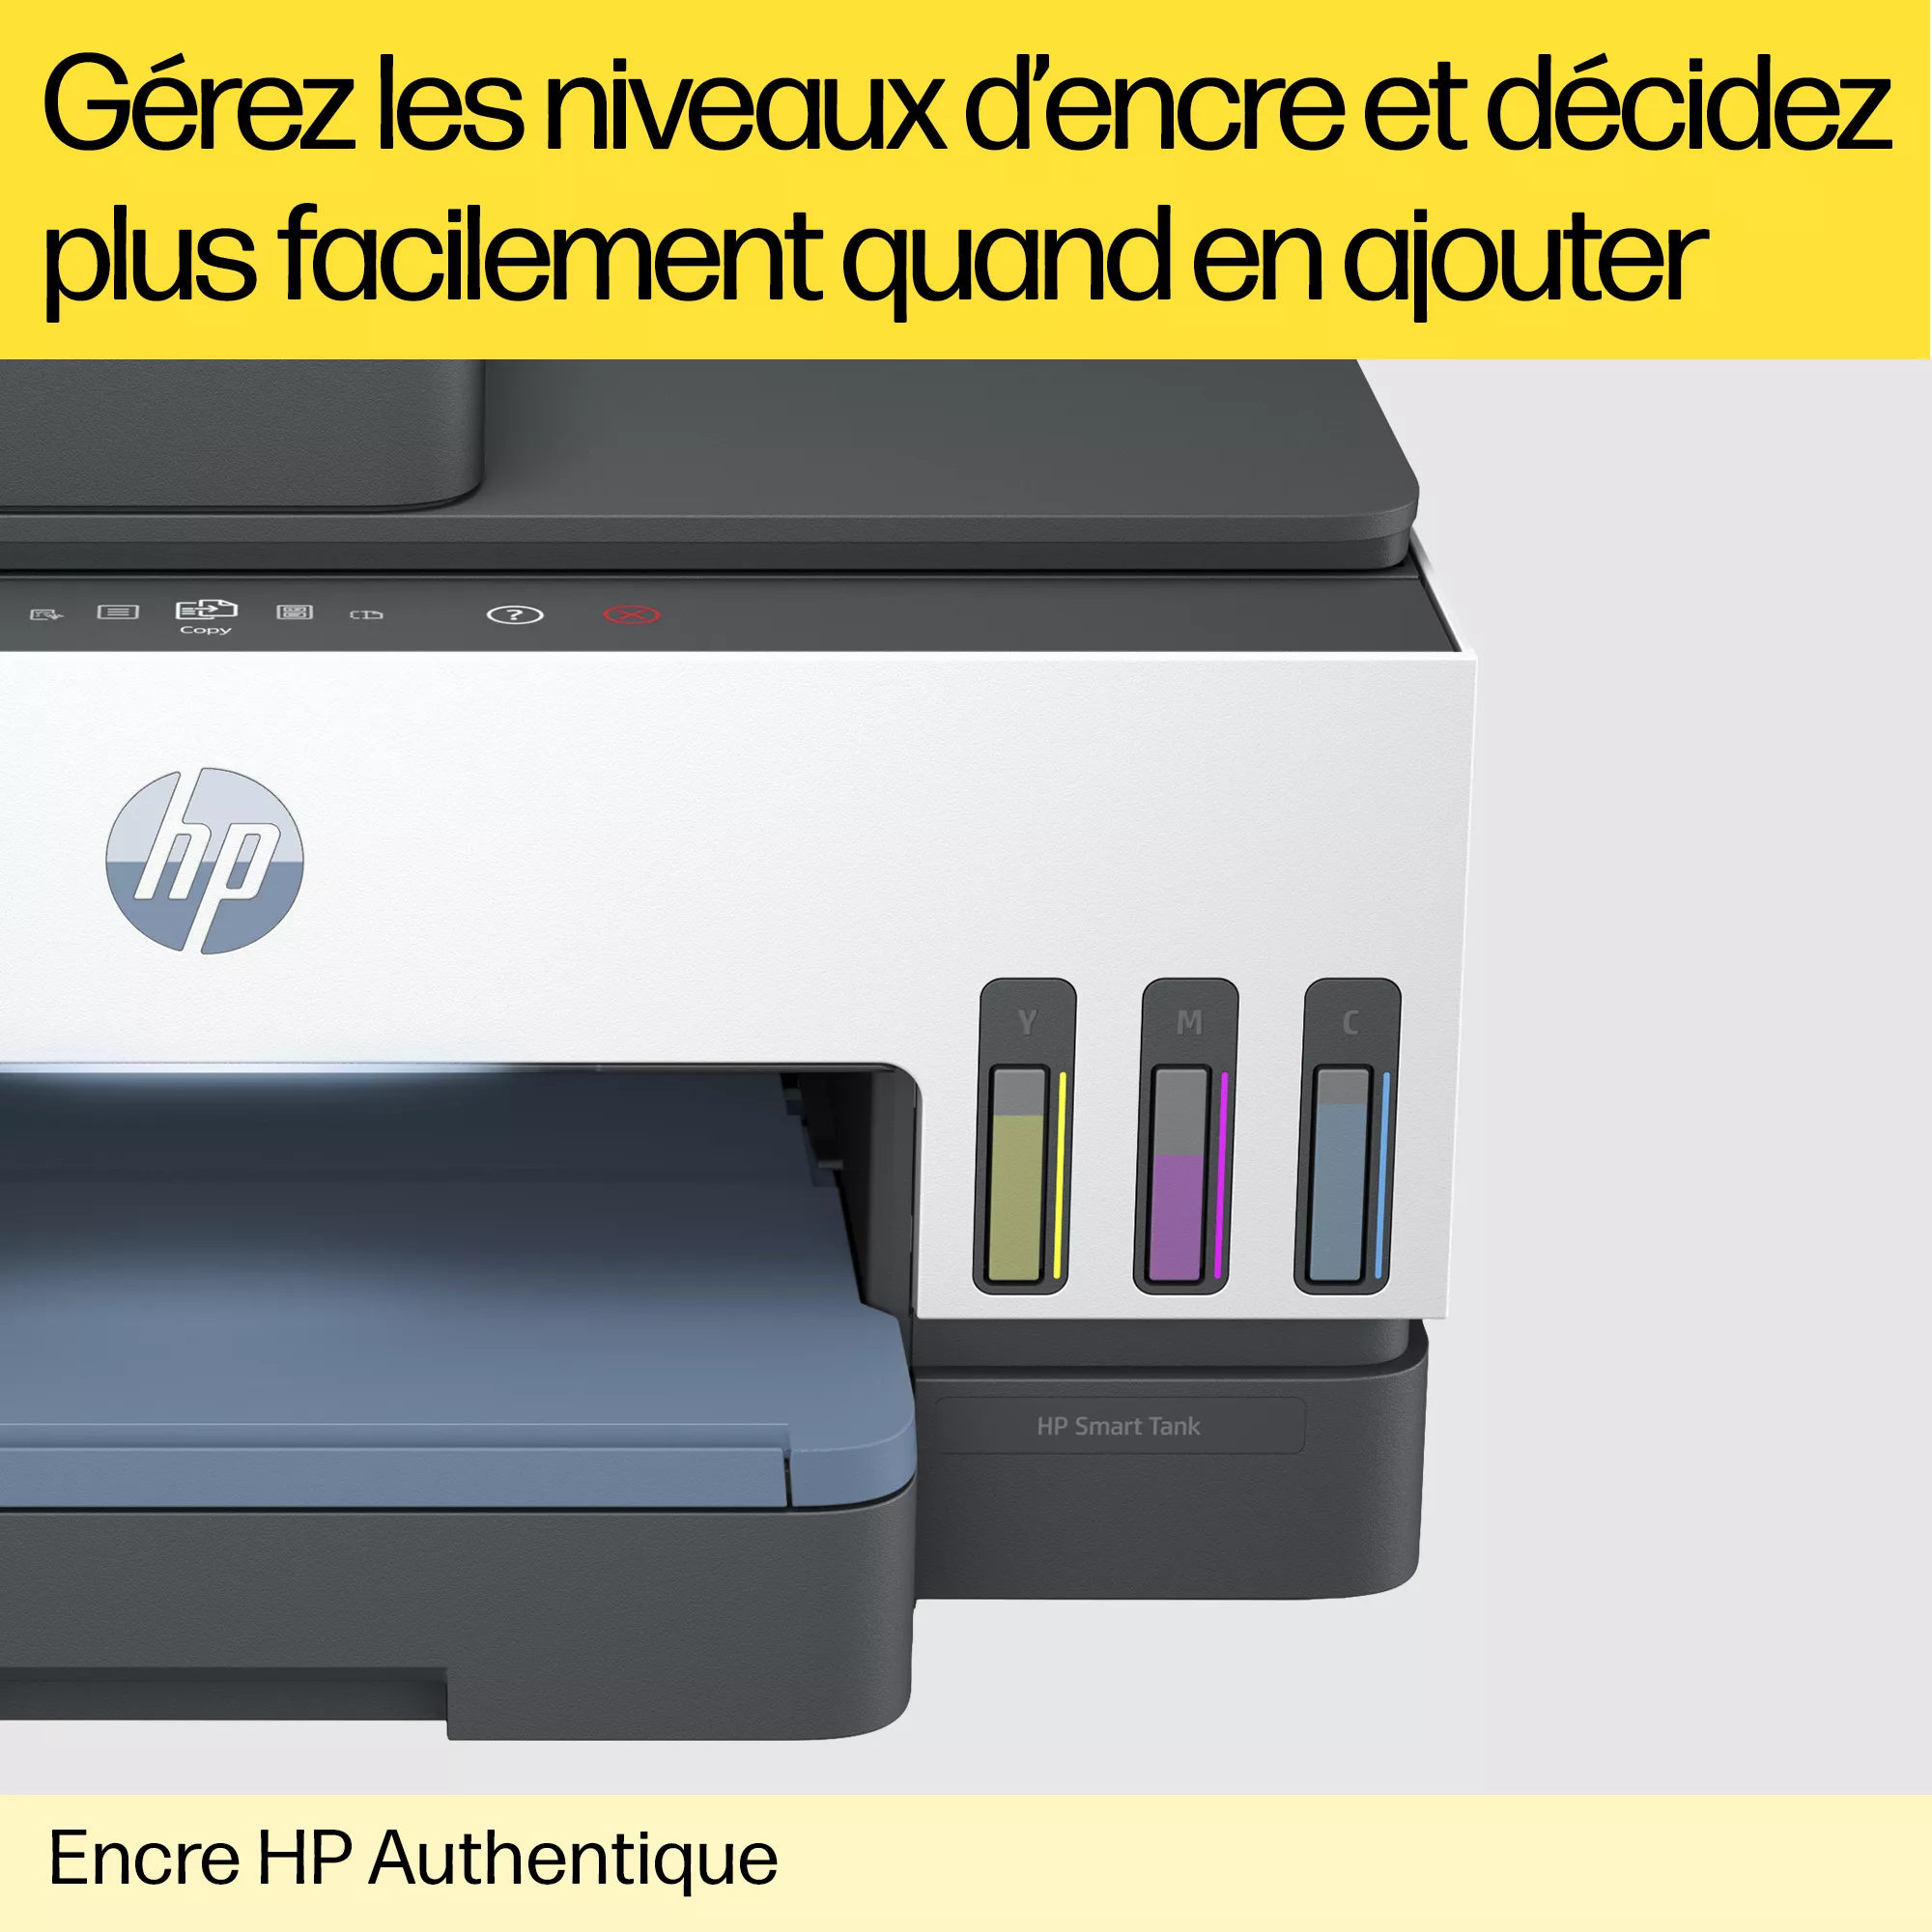 HP 304 Pack de 2 Cartouches d'Encre, Noire et Trois Couleurs, Authentiques  (3JB05AE) : : Informatique